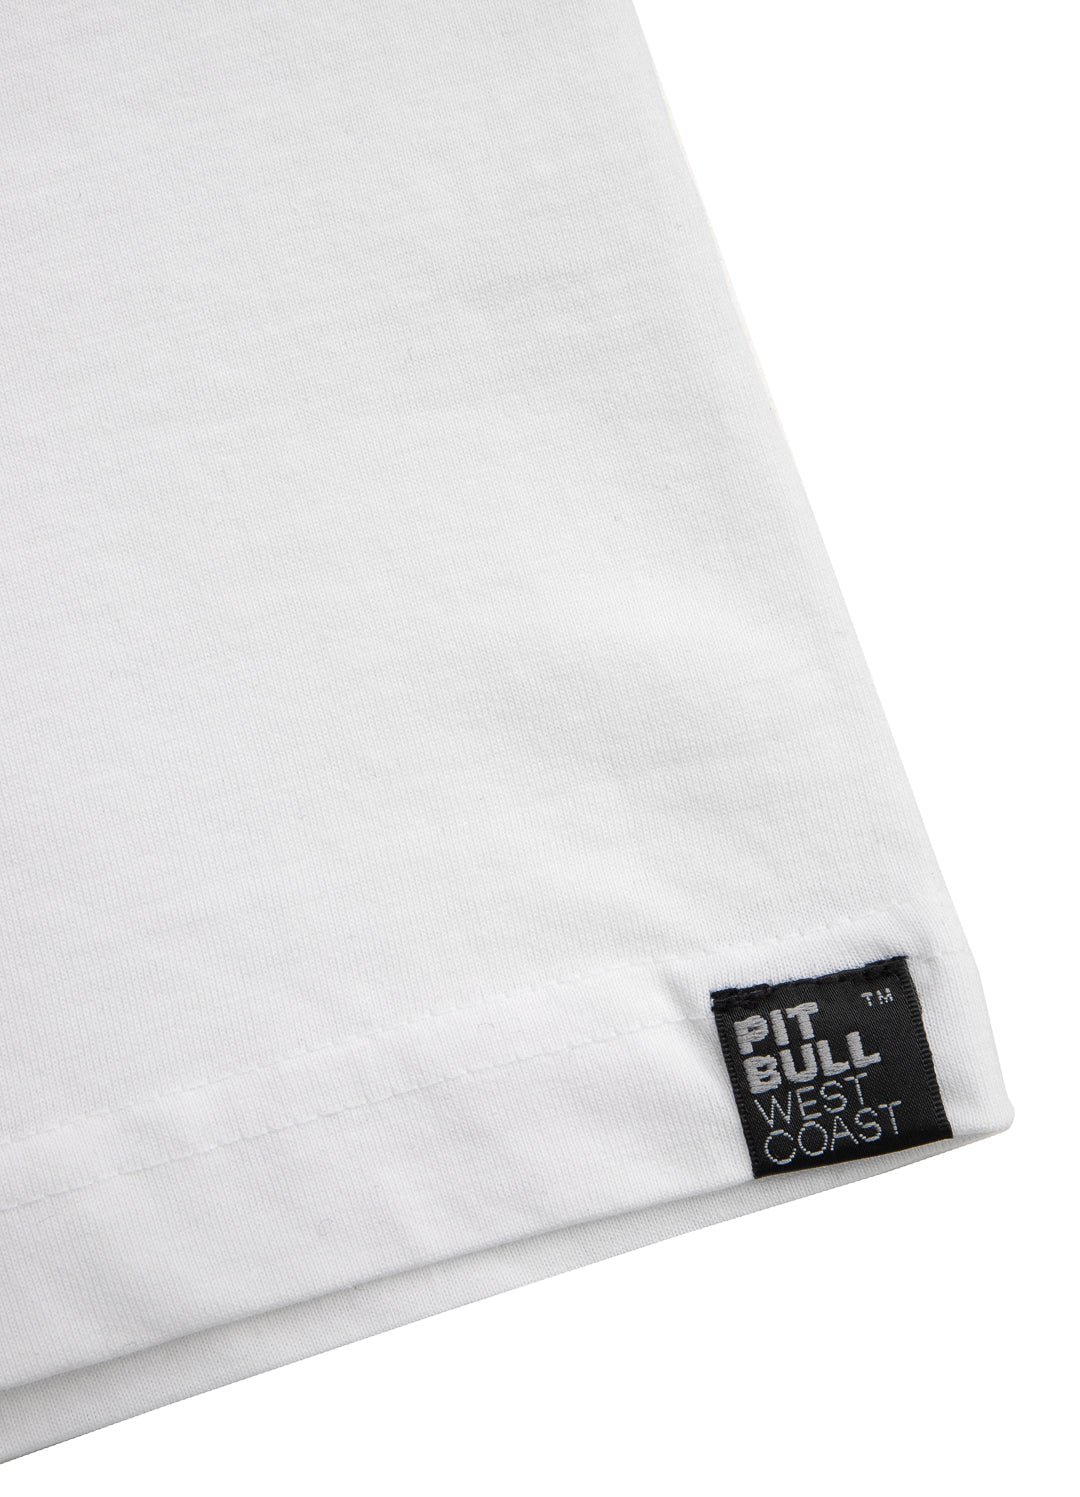 PITBULL USA T-shirt White.